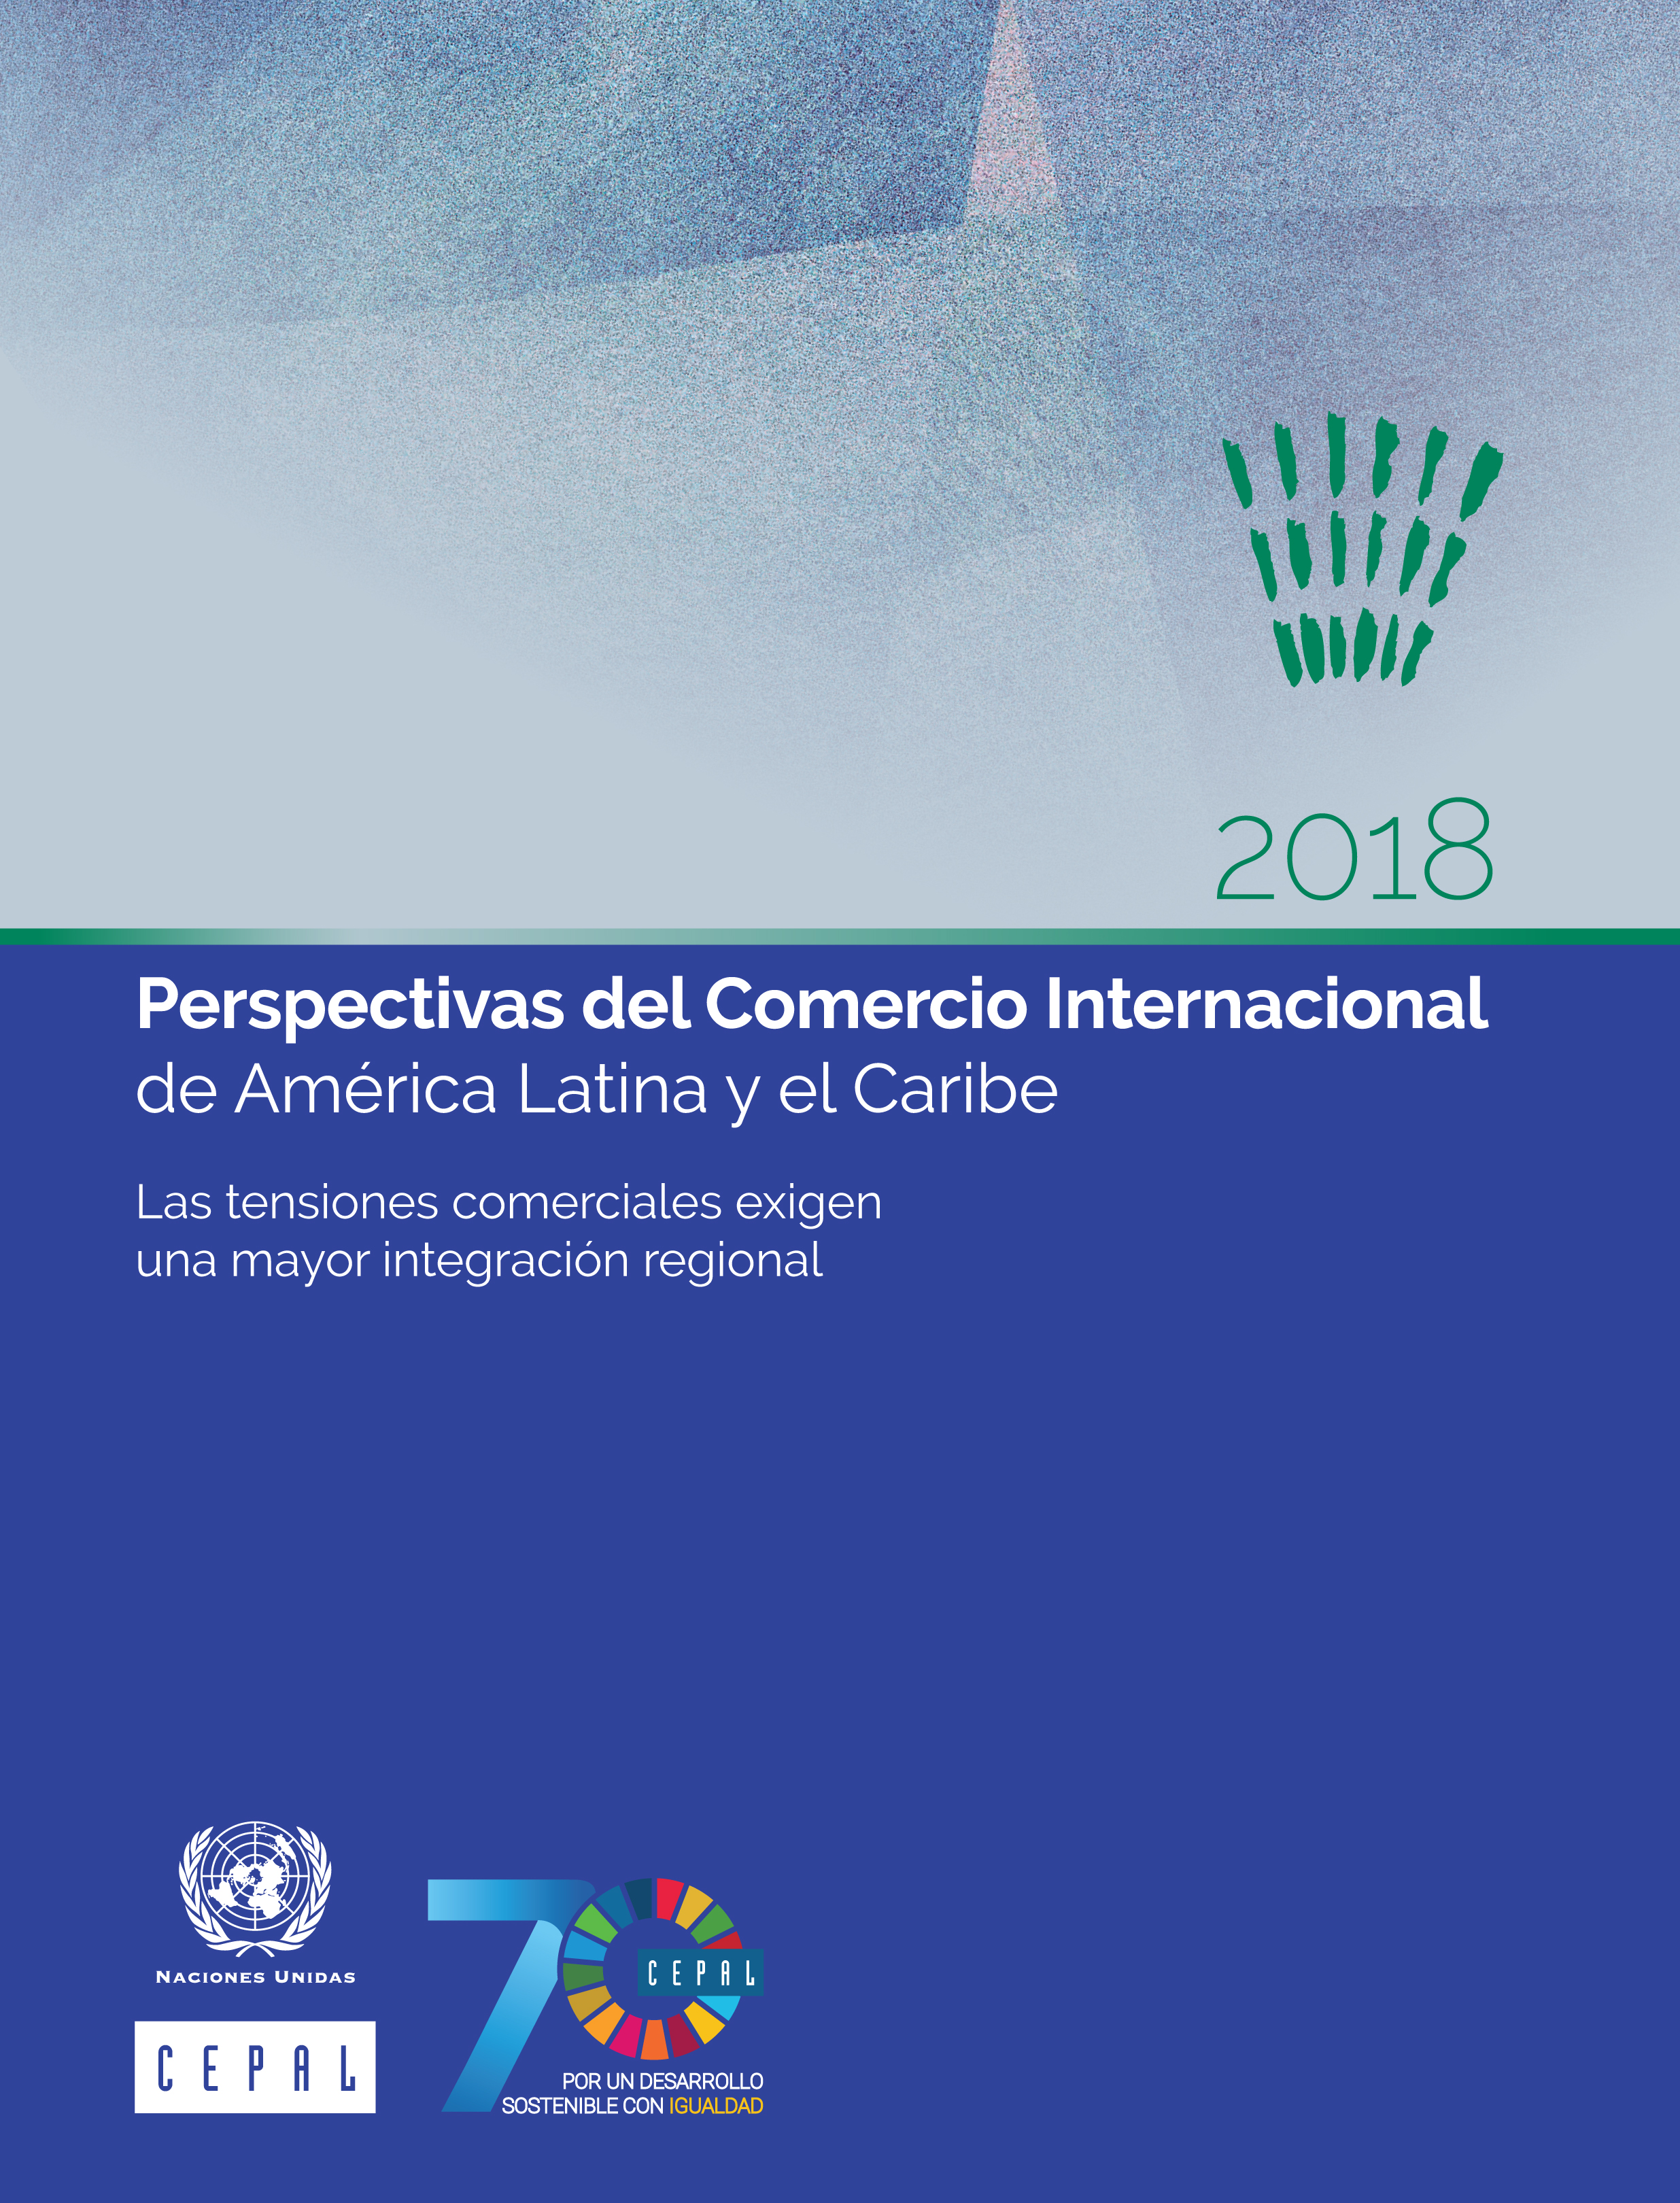 image of Perspectivas del Comercio Internacional de América Latina y el Caribe 2018